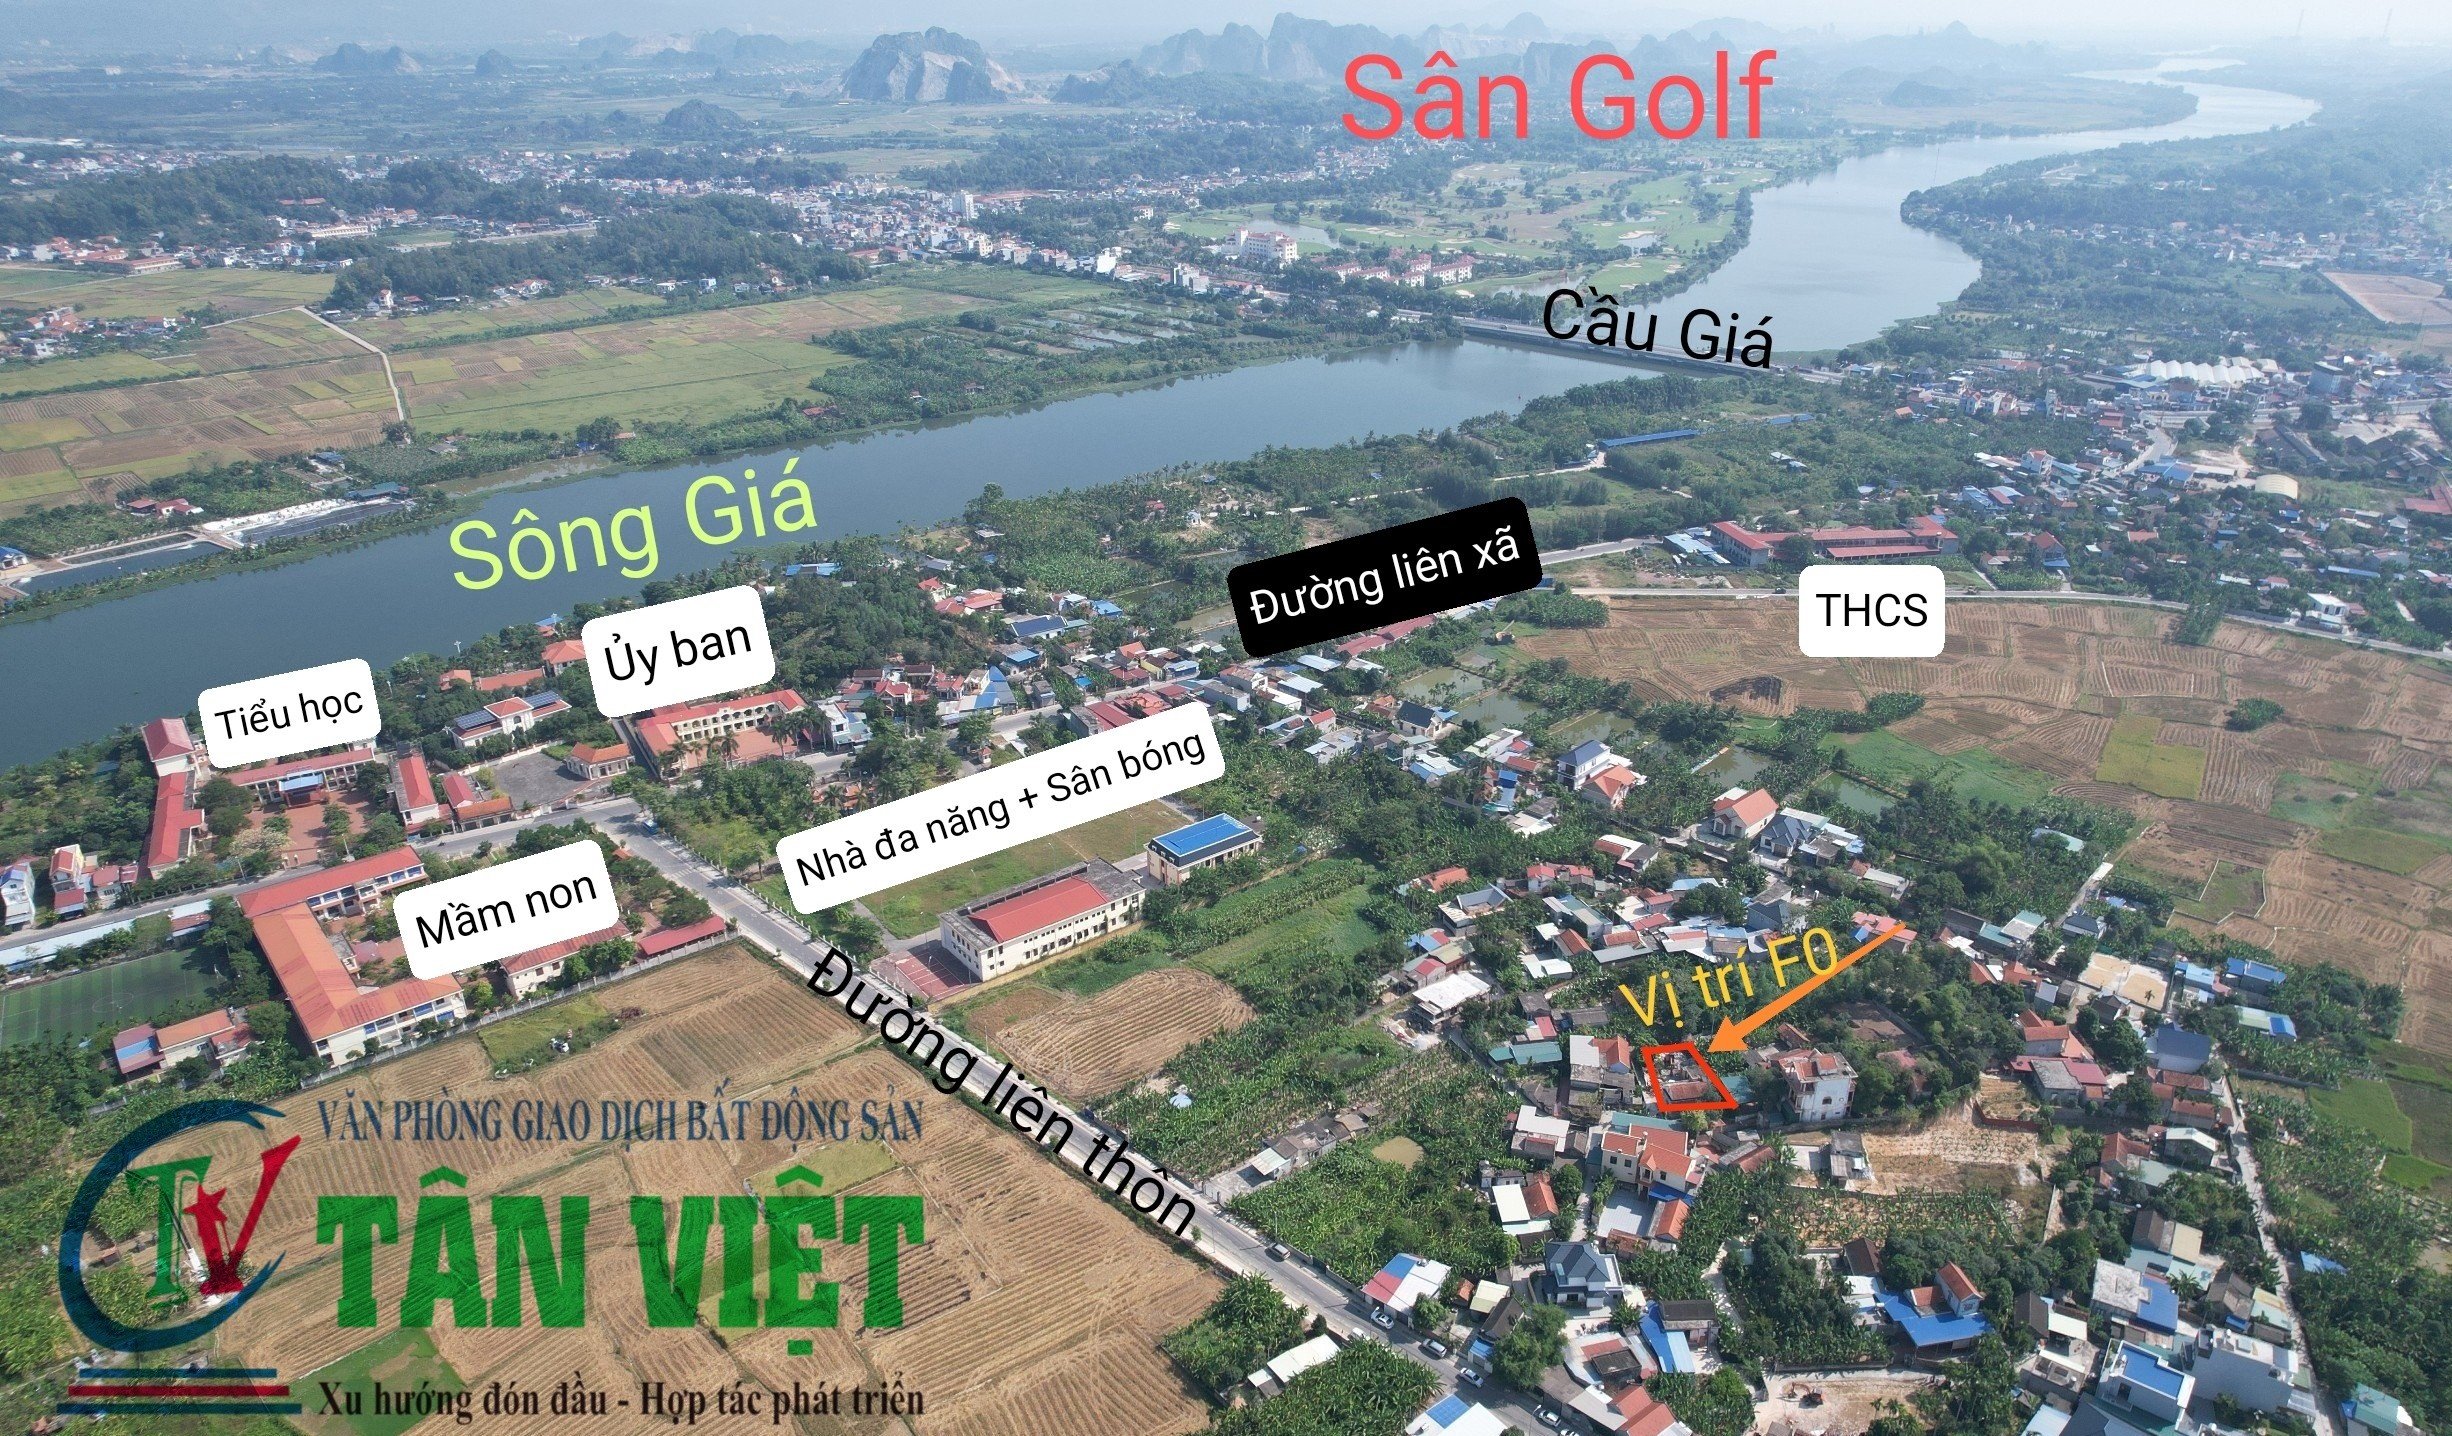 Bán lô đất vị trí đẹp, giá rẻ tại Kênh Giang, Thủy Nguyên, Hải Phòng